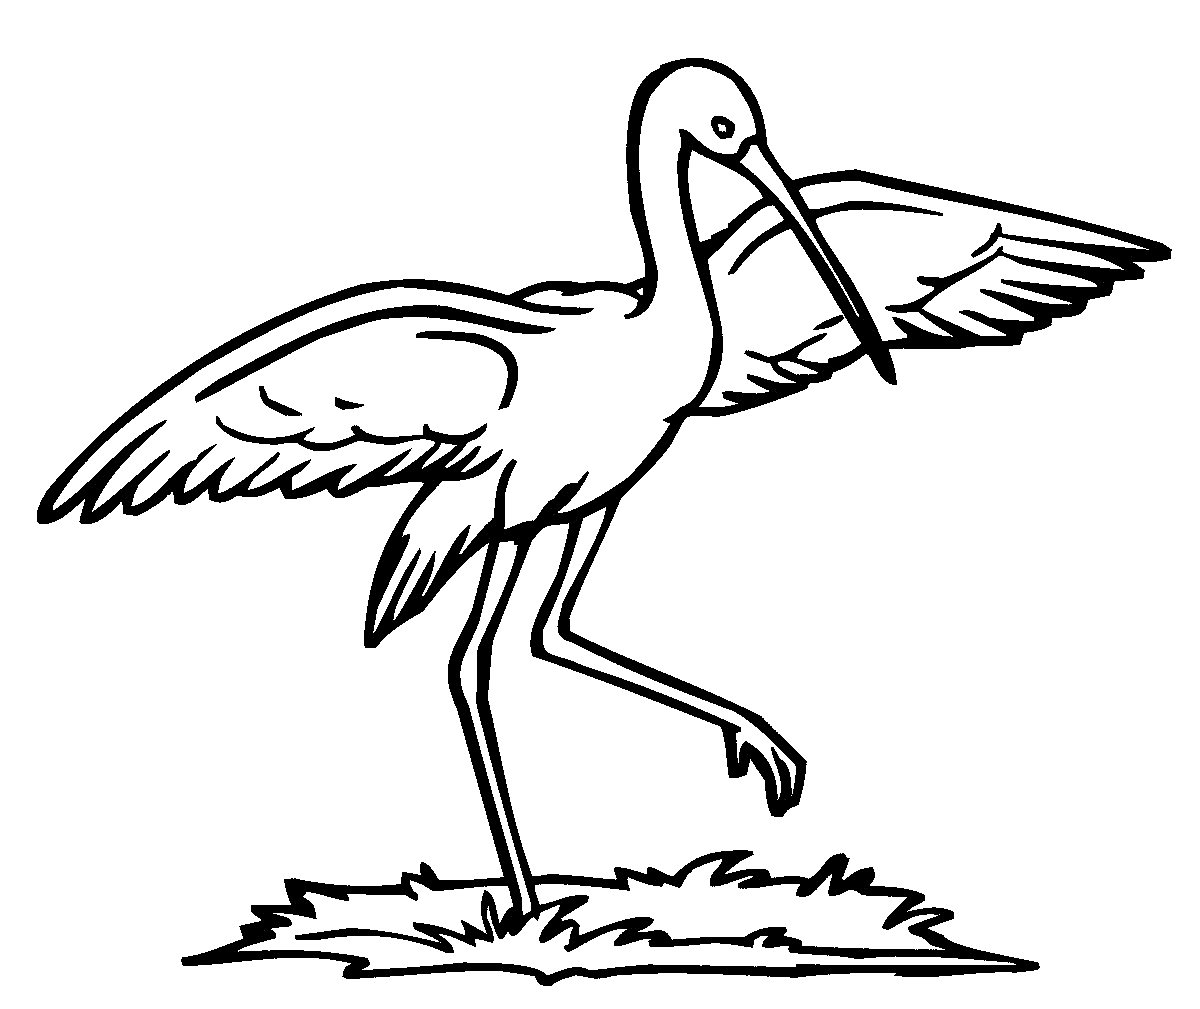 Птица с длинным клювом и распростертыми крыльями стоит на поляне